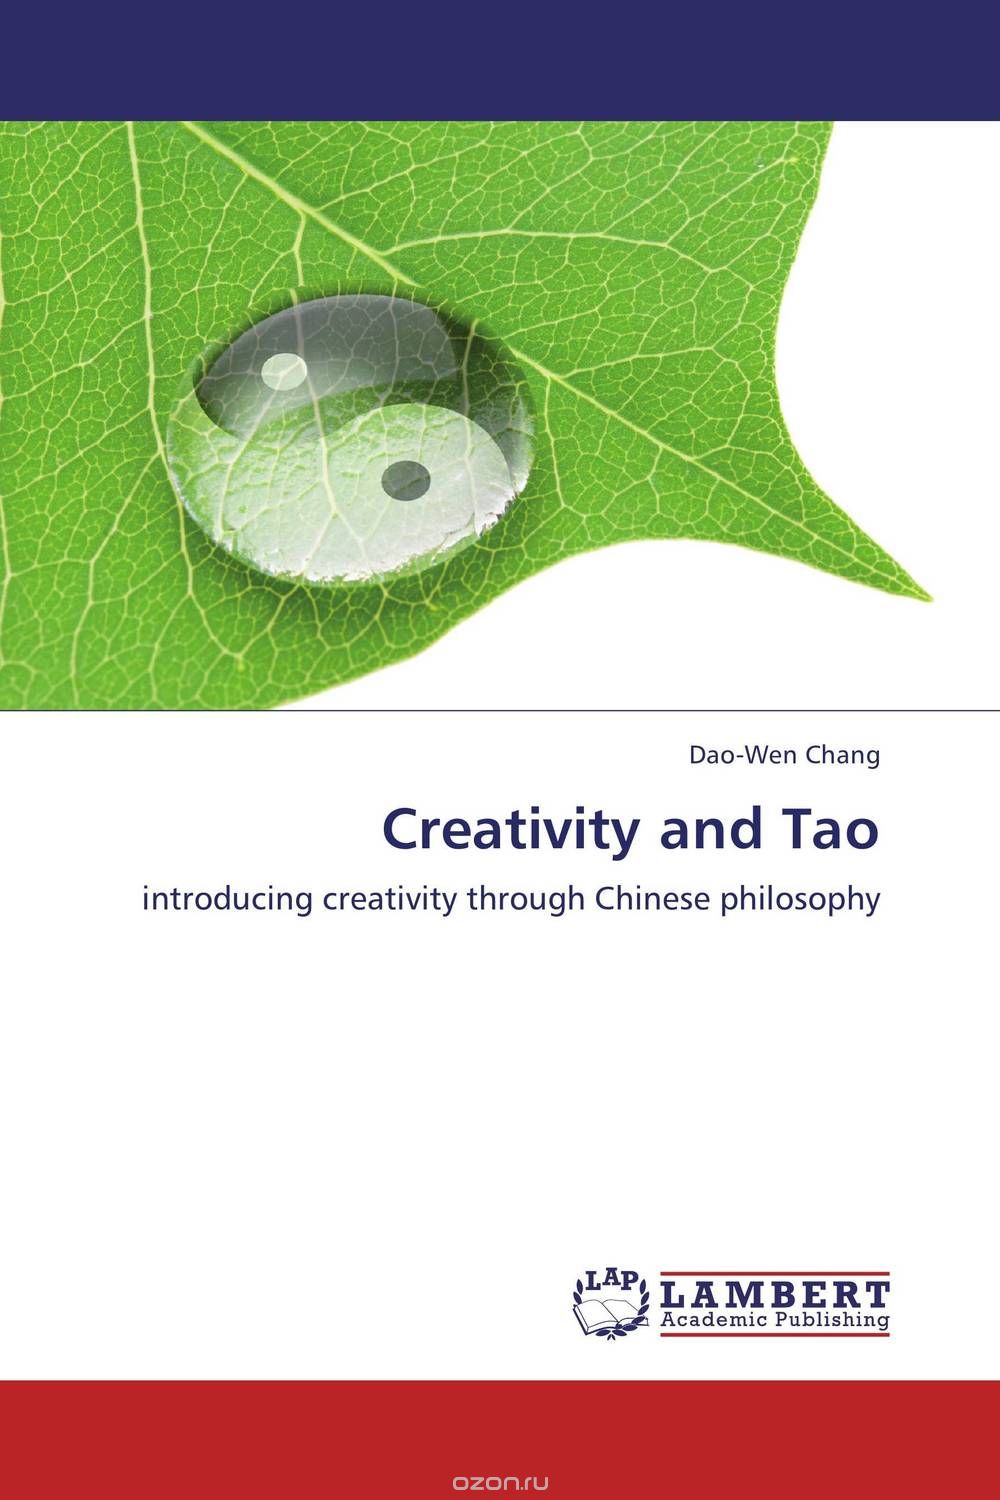 Скачать книгу "Creativity and Tao"